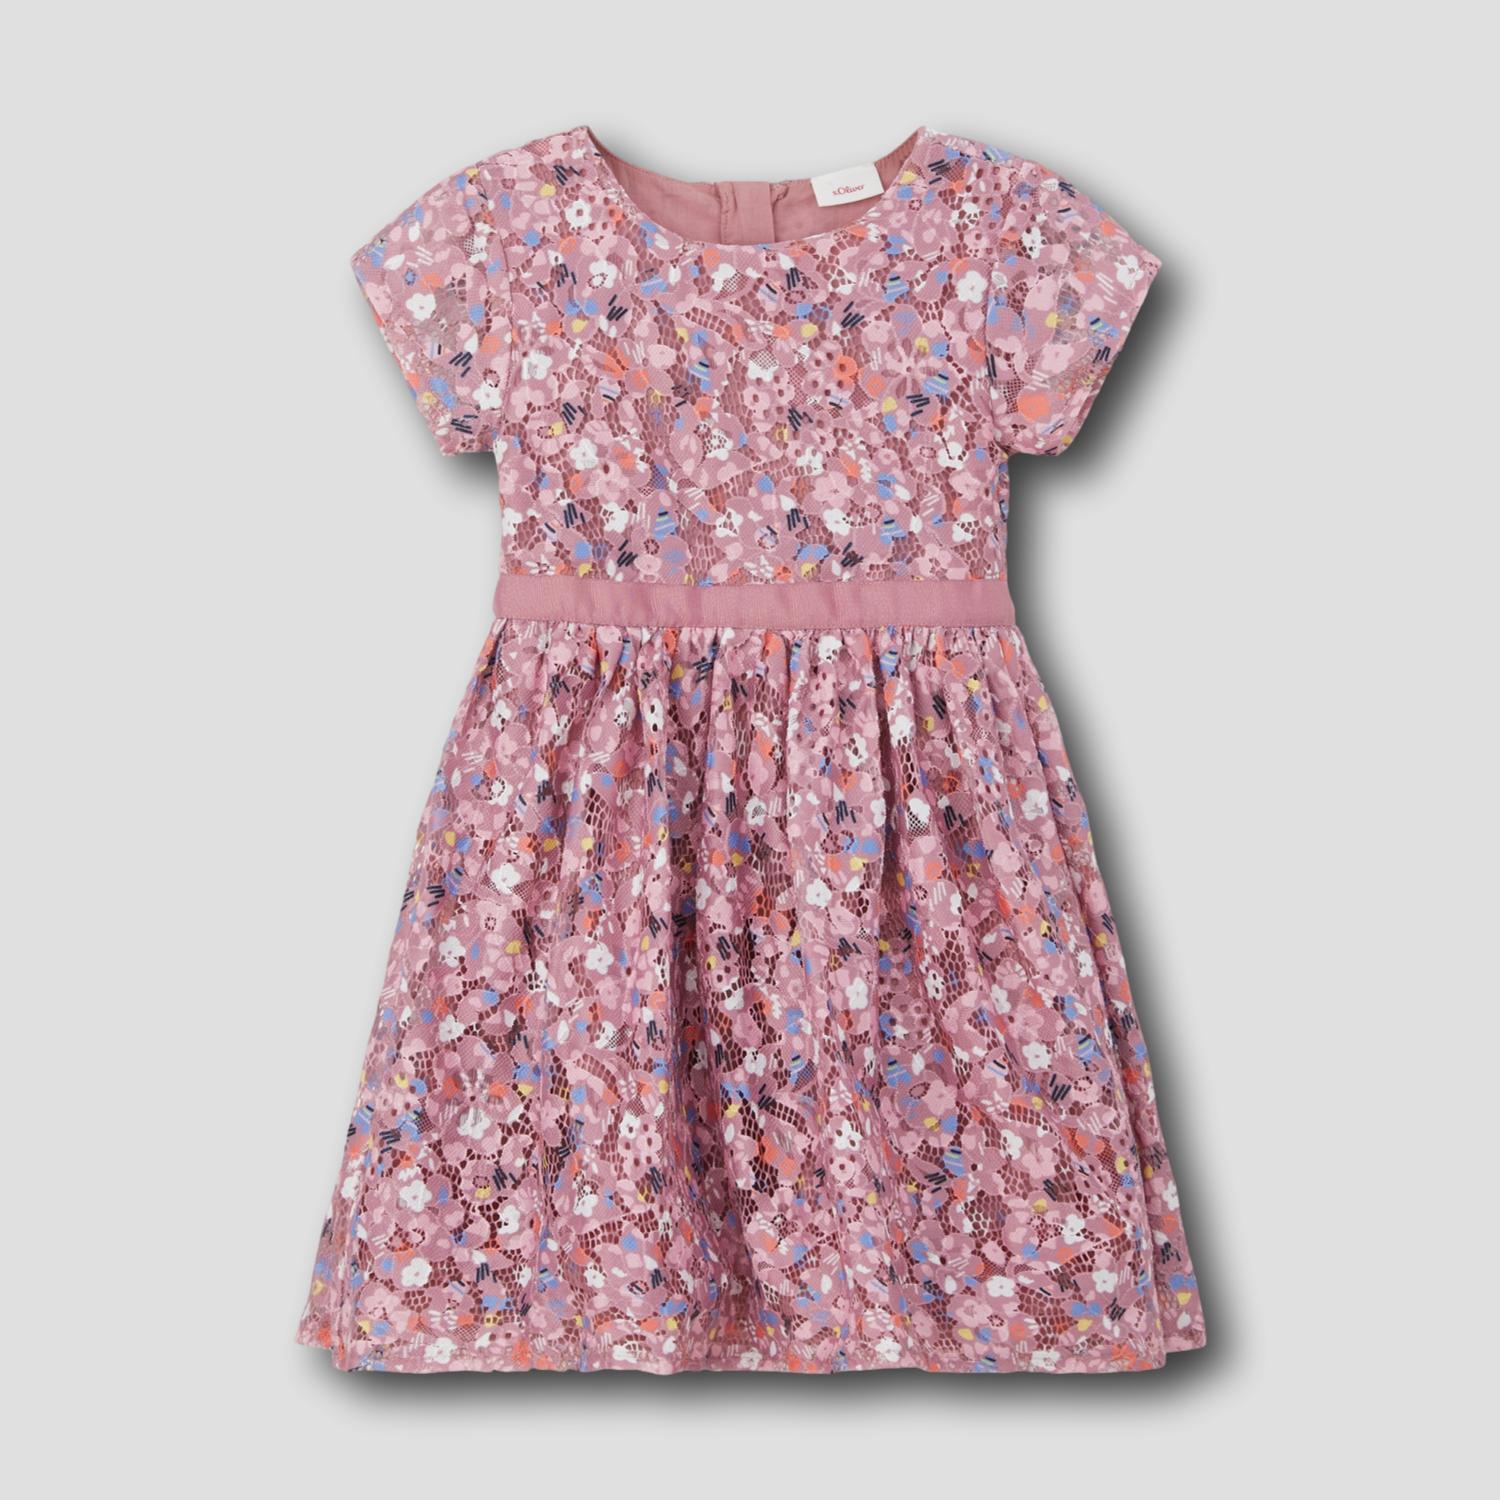 Kinder-Kleid mit floralem Muster